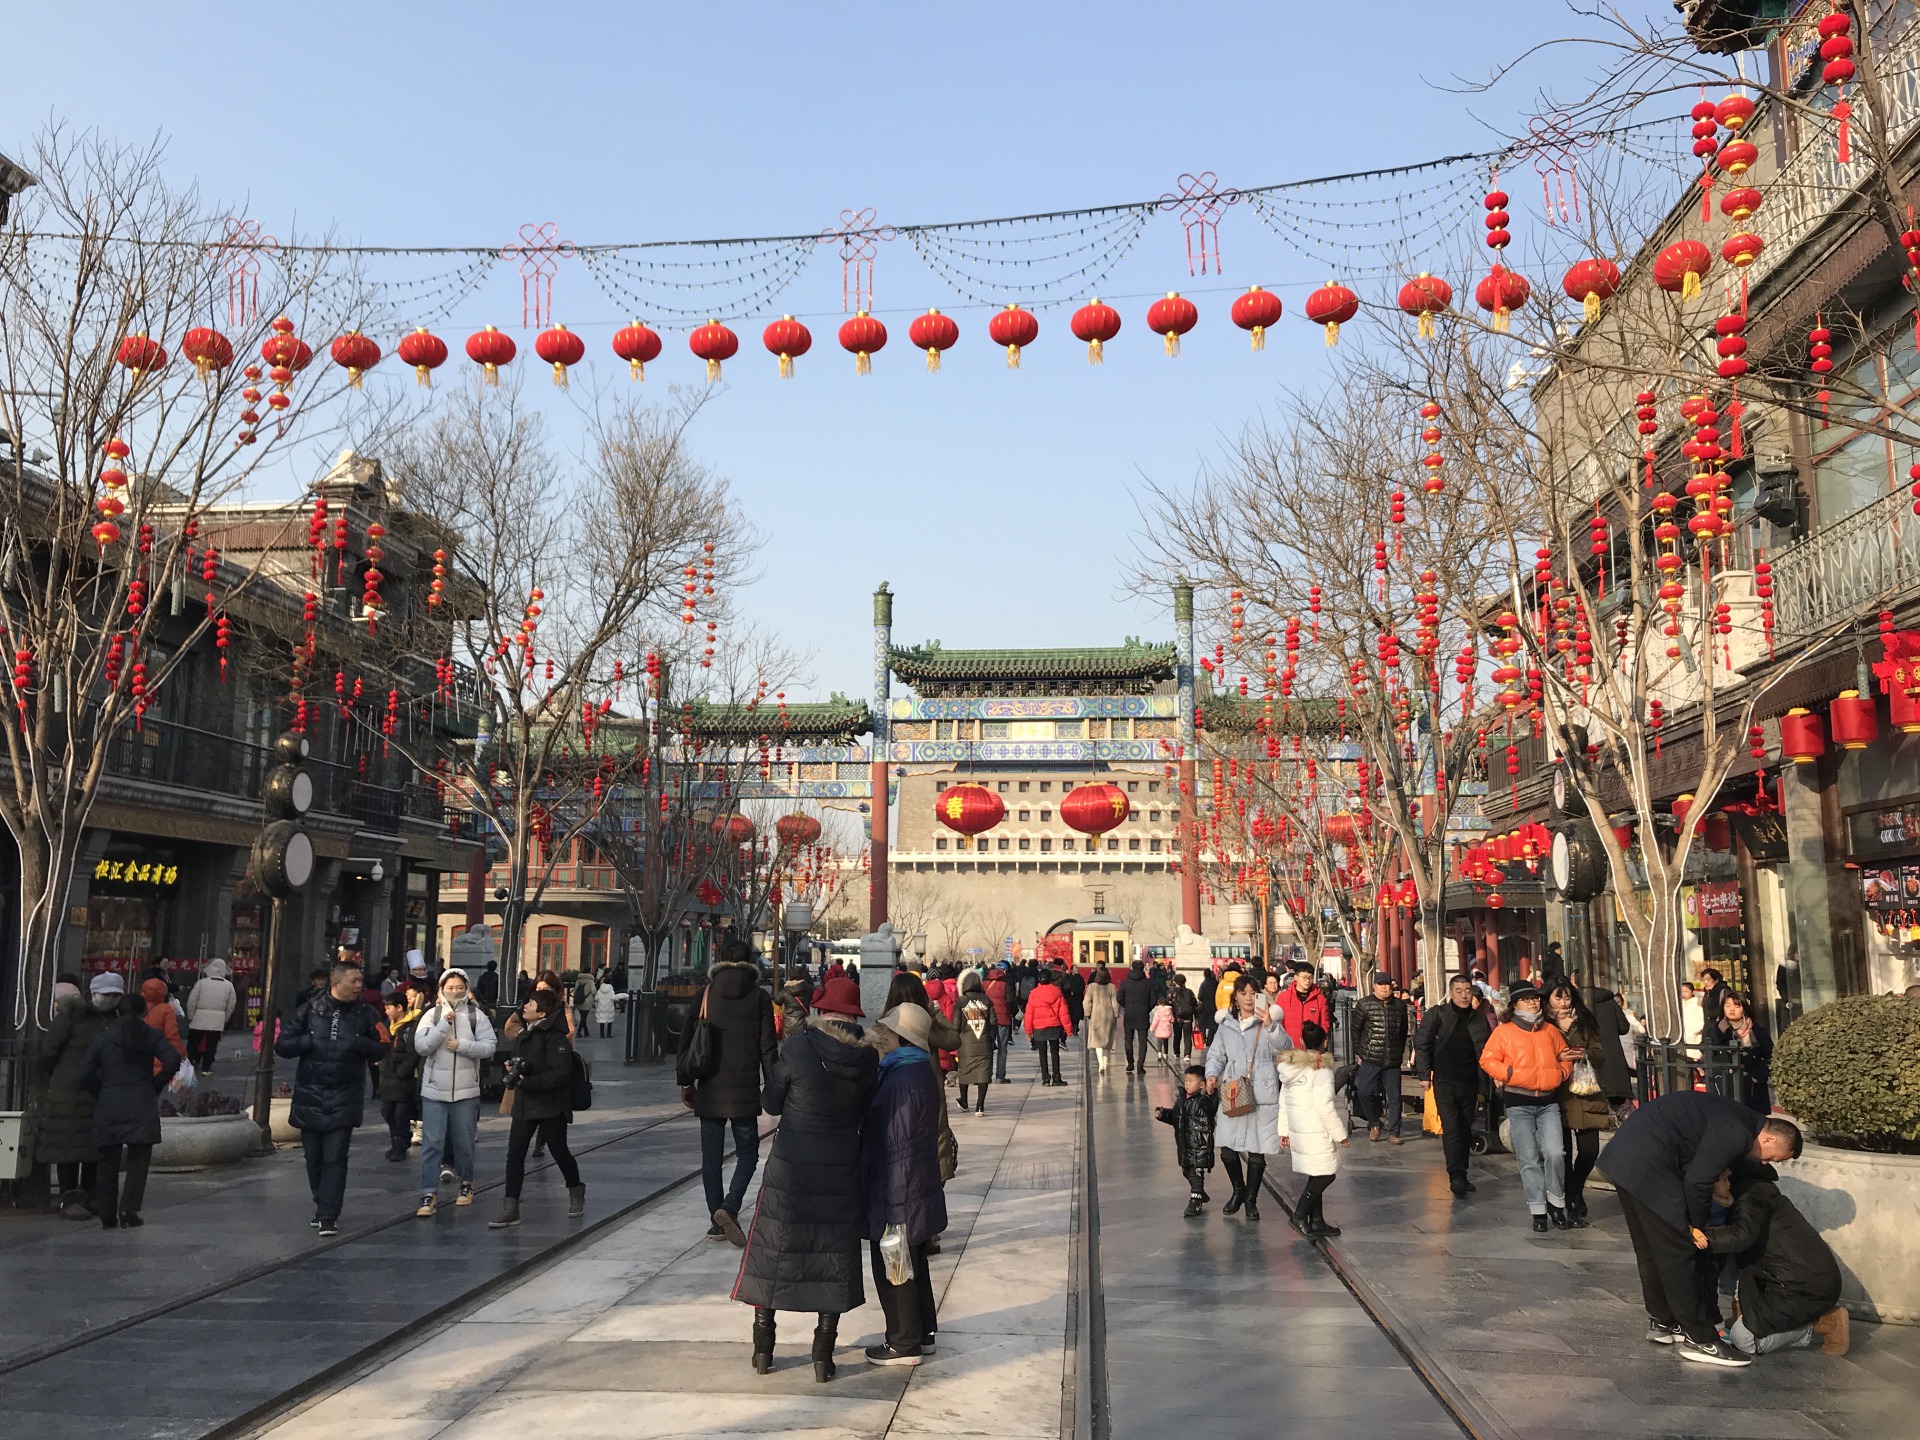 Mój pobyt w Pekinie - przelot, praca, zwiedzanie - zLukaszem